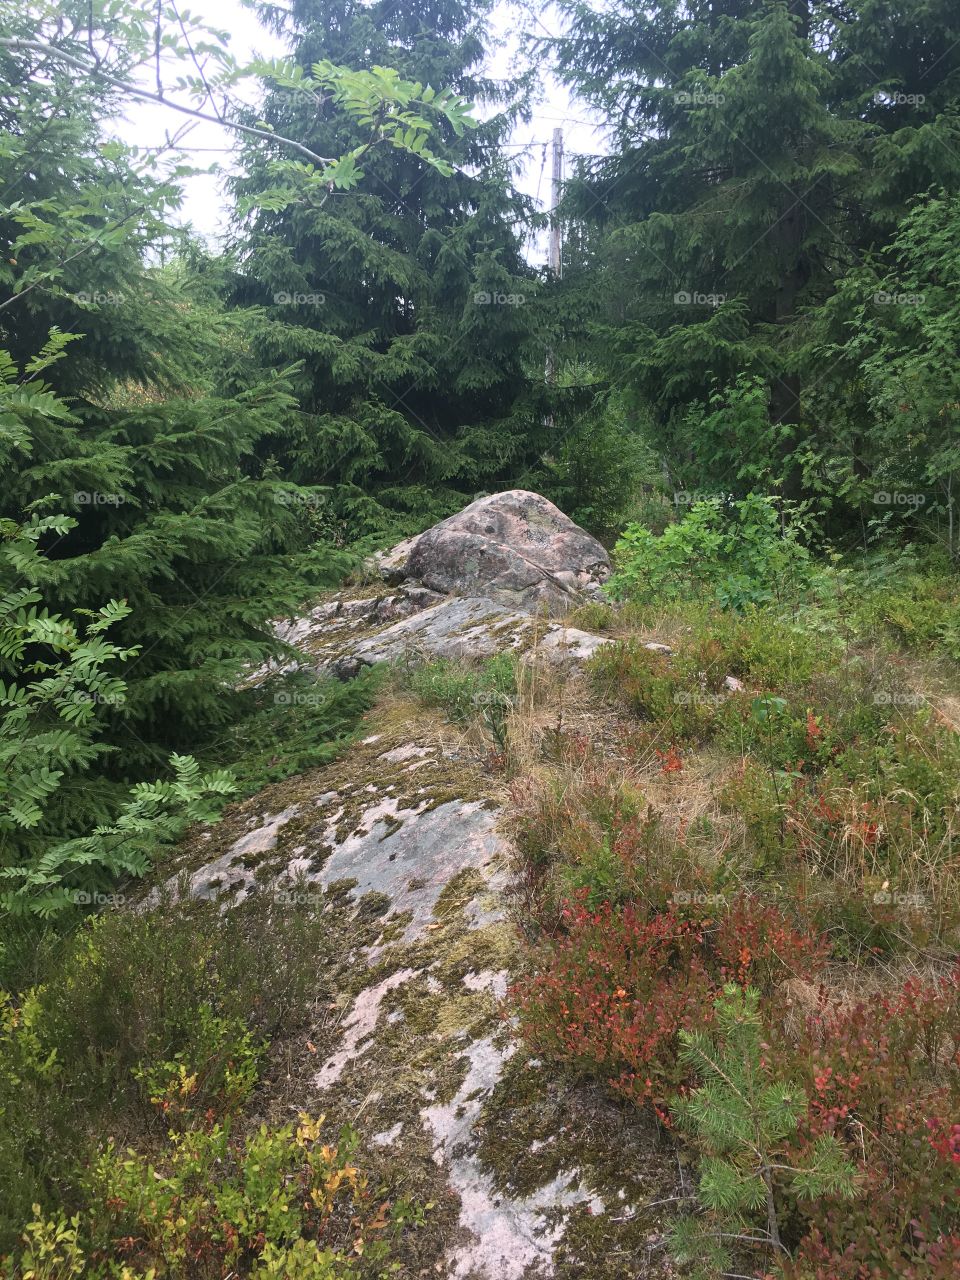 Mushroom shaped rock between pines